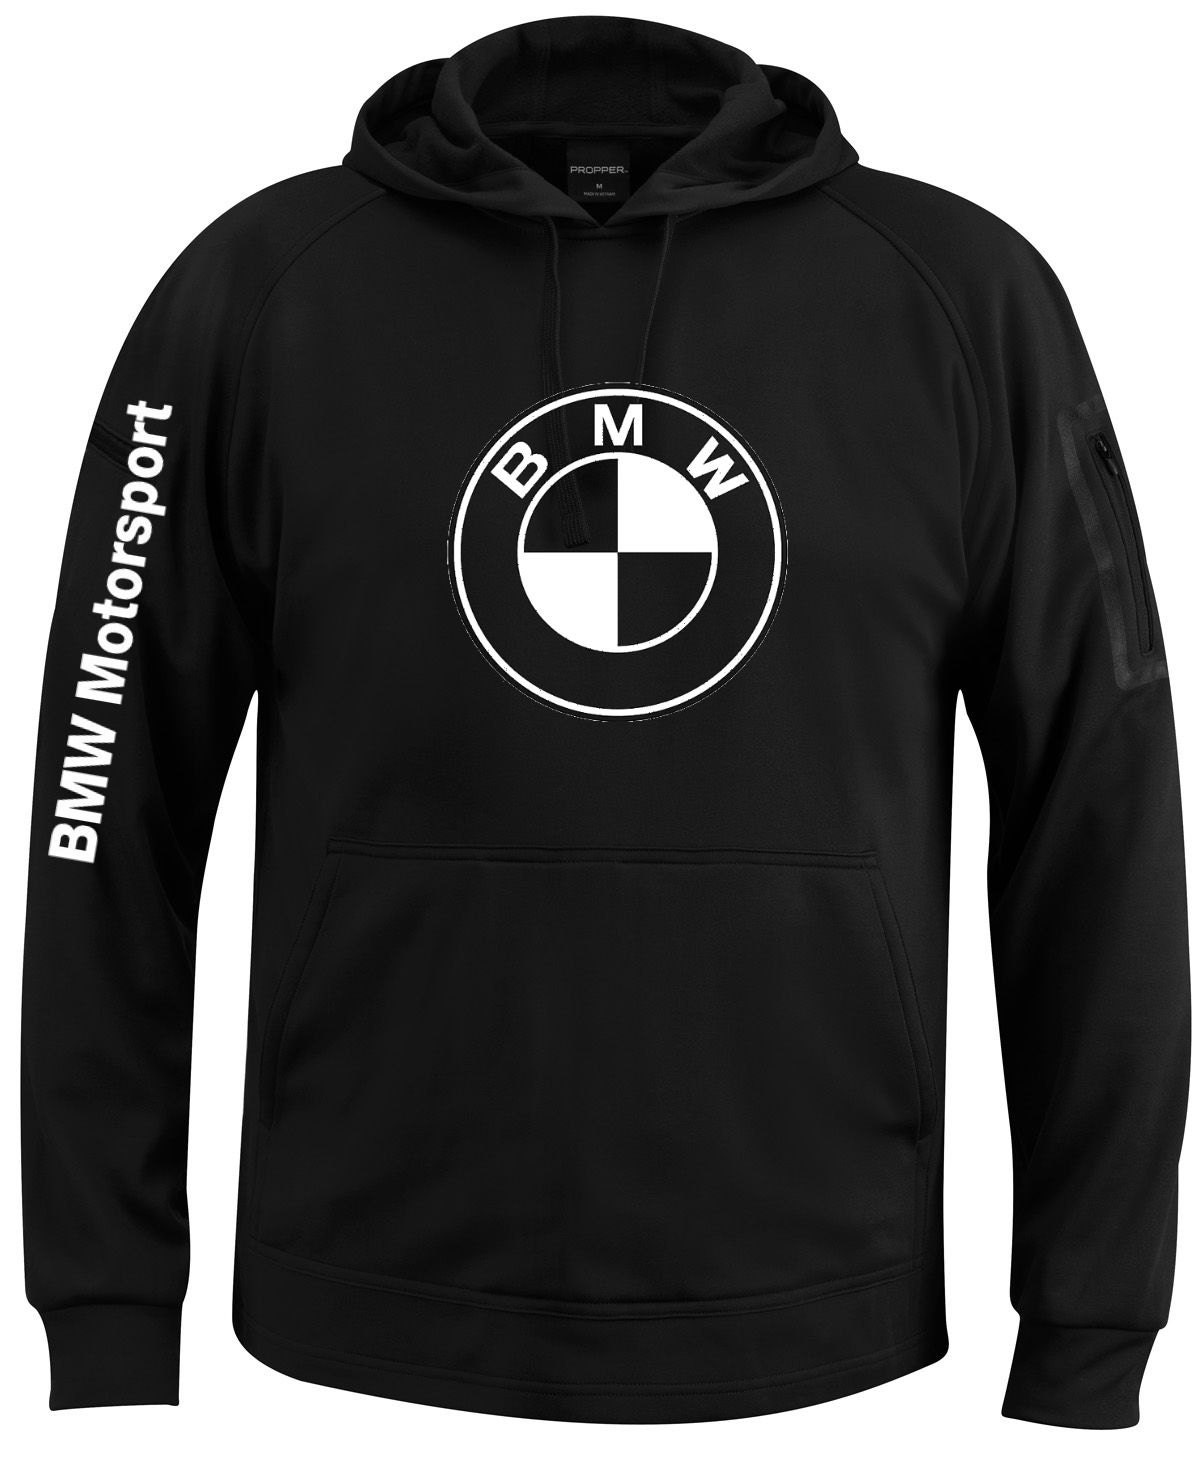 BMW Motorsport sweatshirt best quality unisex hoodie all